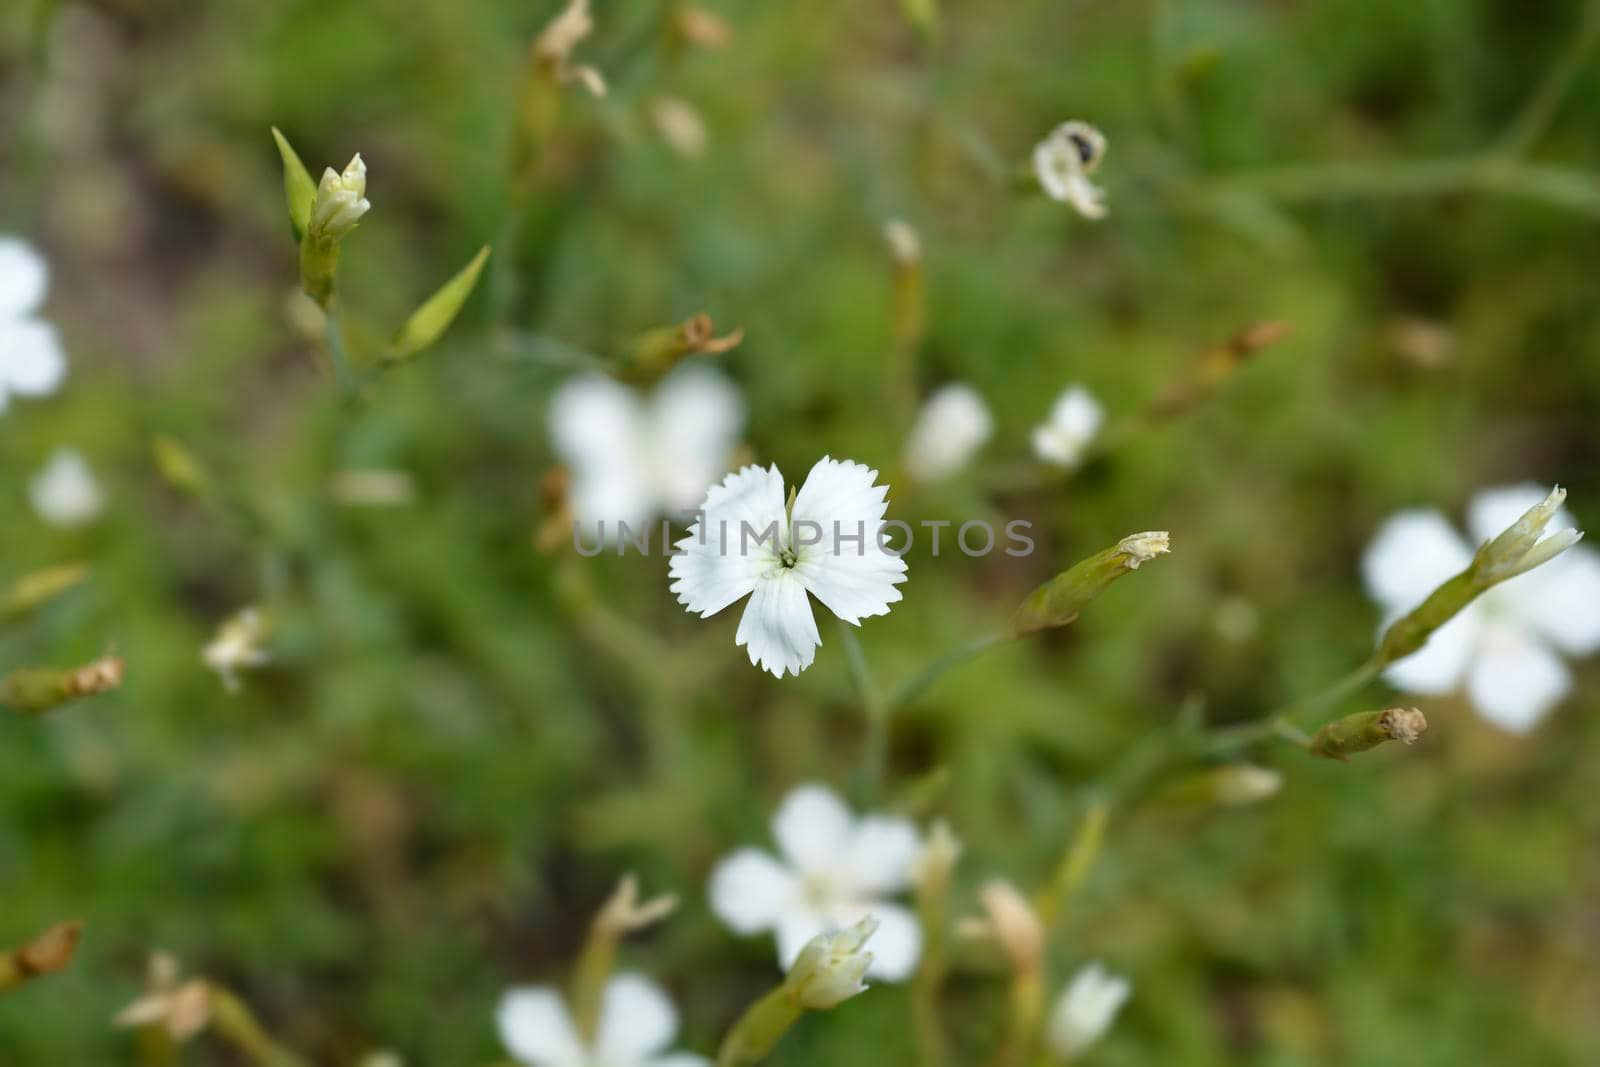 Maiden Pink White - Latin name - Dianthus deltoides Albus